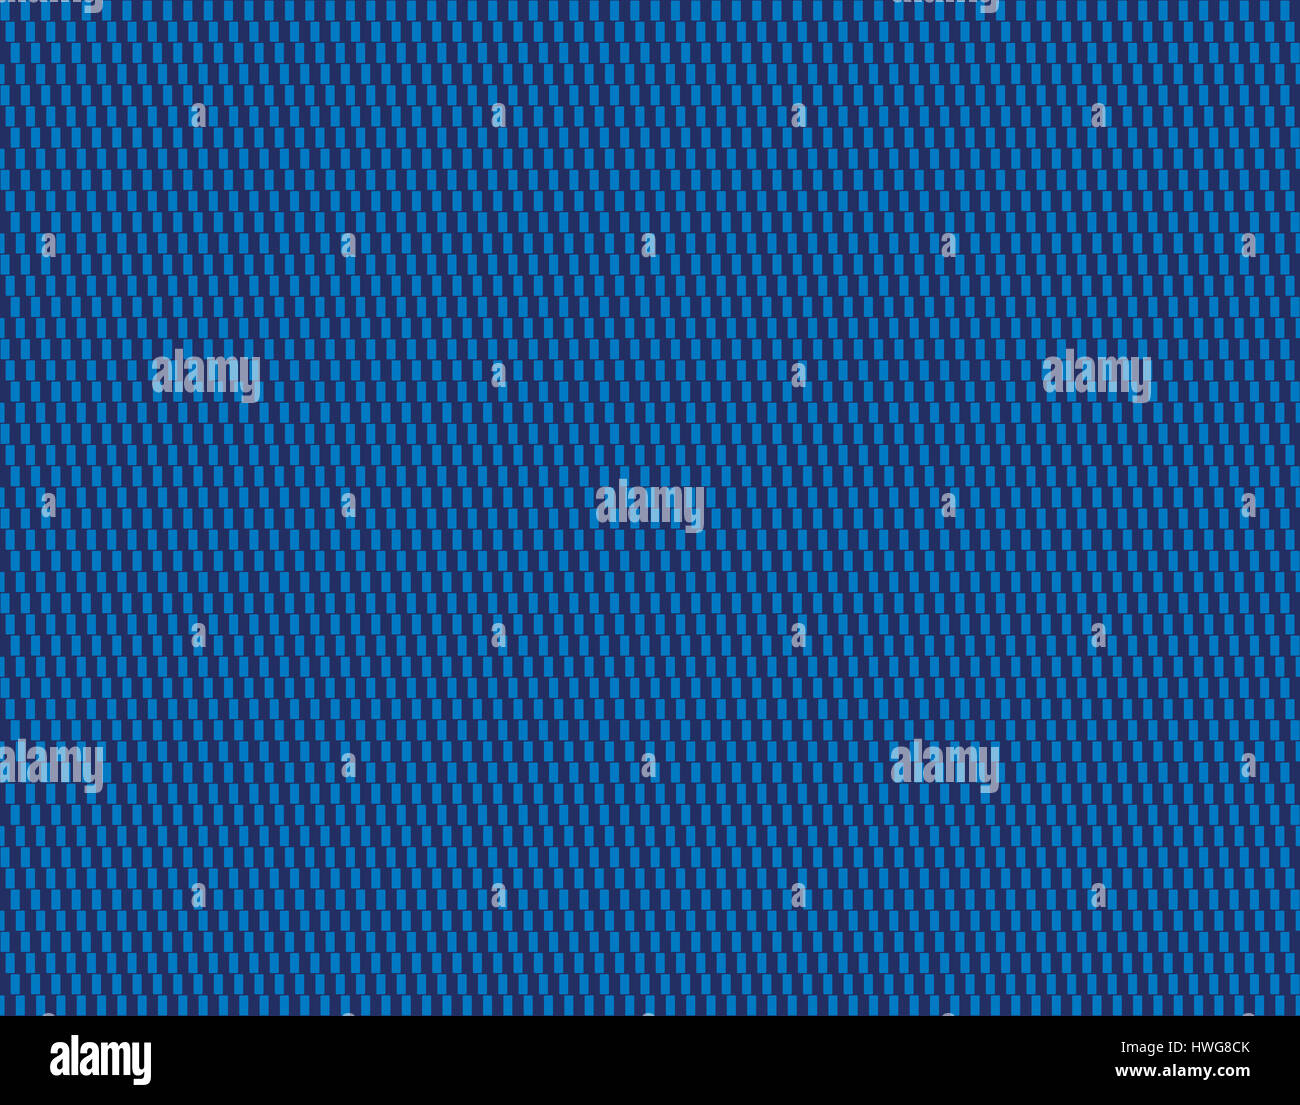 Textile bleu motif de fond. Cafe wall illusion géométrique de la tuile. Seamless dans toutes les directions. Formé par les lignes des rectangles blancs semblent être en pente Banque D'Images